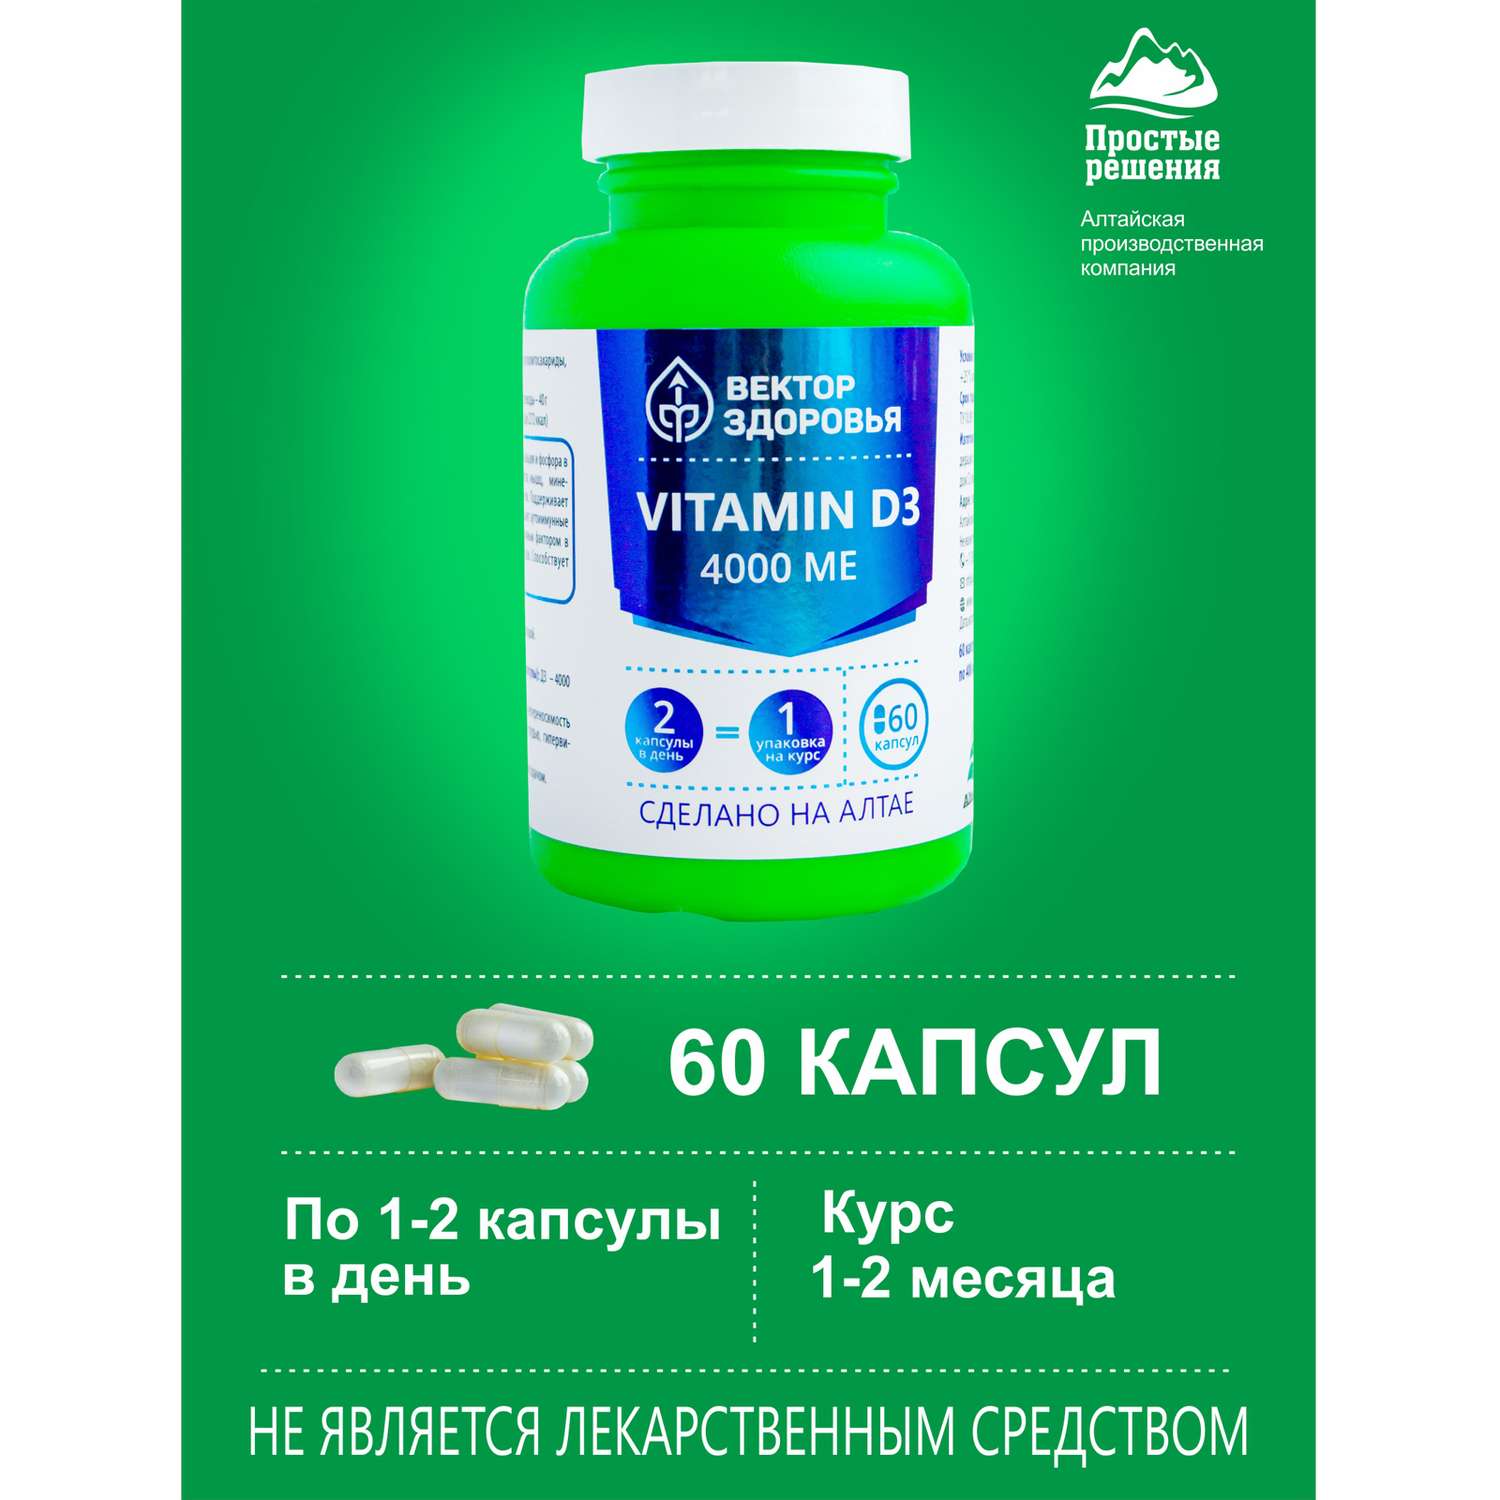 Концетраты пищевые Алтайские традиции Комплекс Витамин D3 4000 МЕ 60 капсул - фото 3